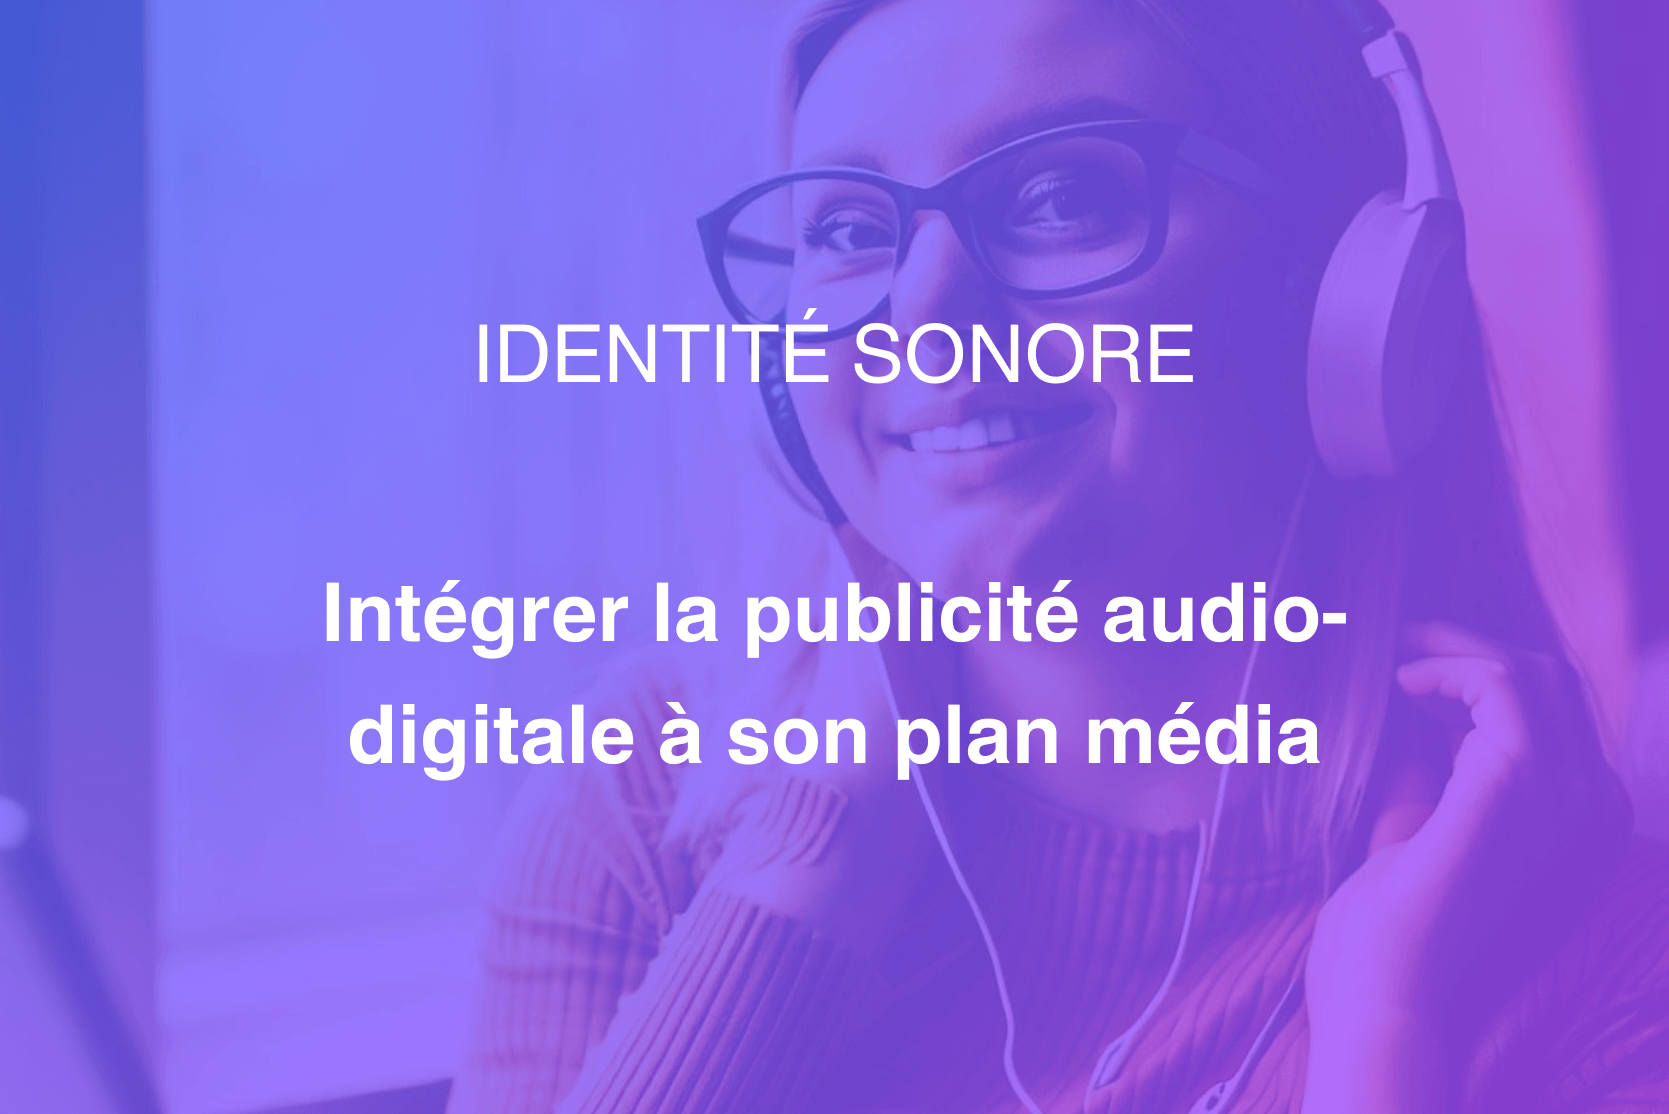 Couverture de notre article "intégrer la publicité audio-digitale dans son plan média"